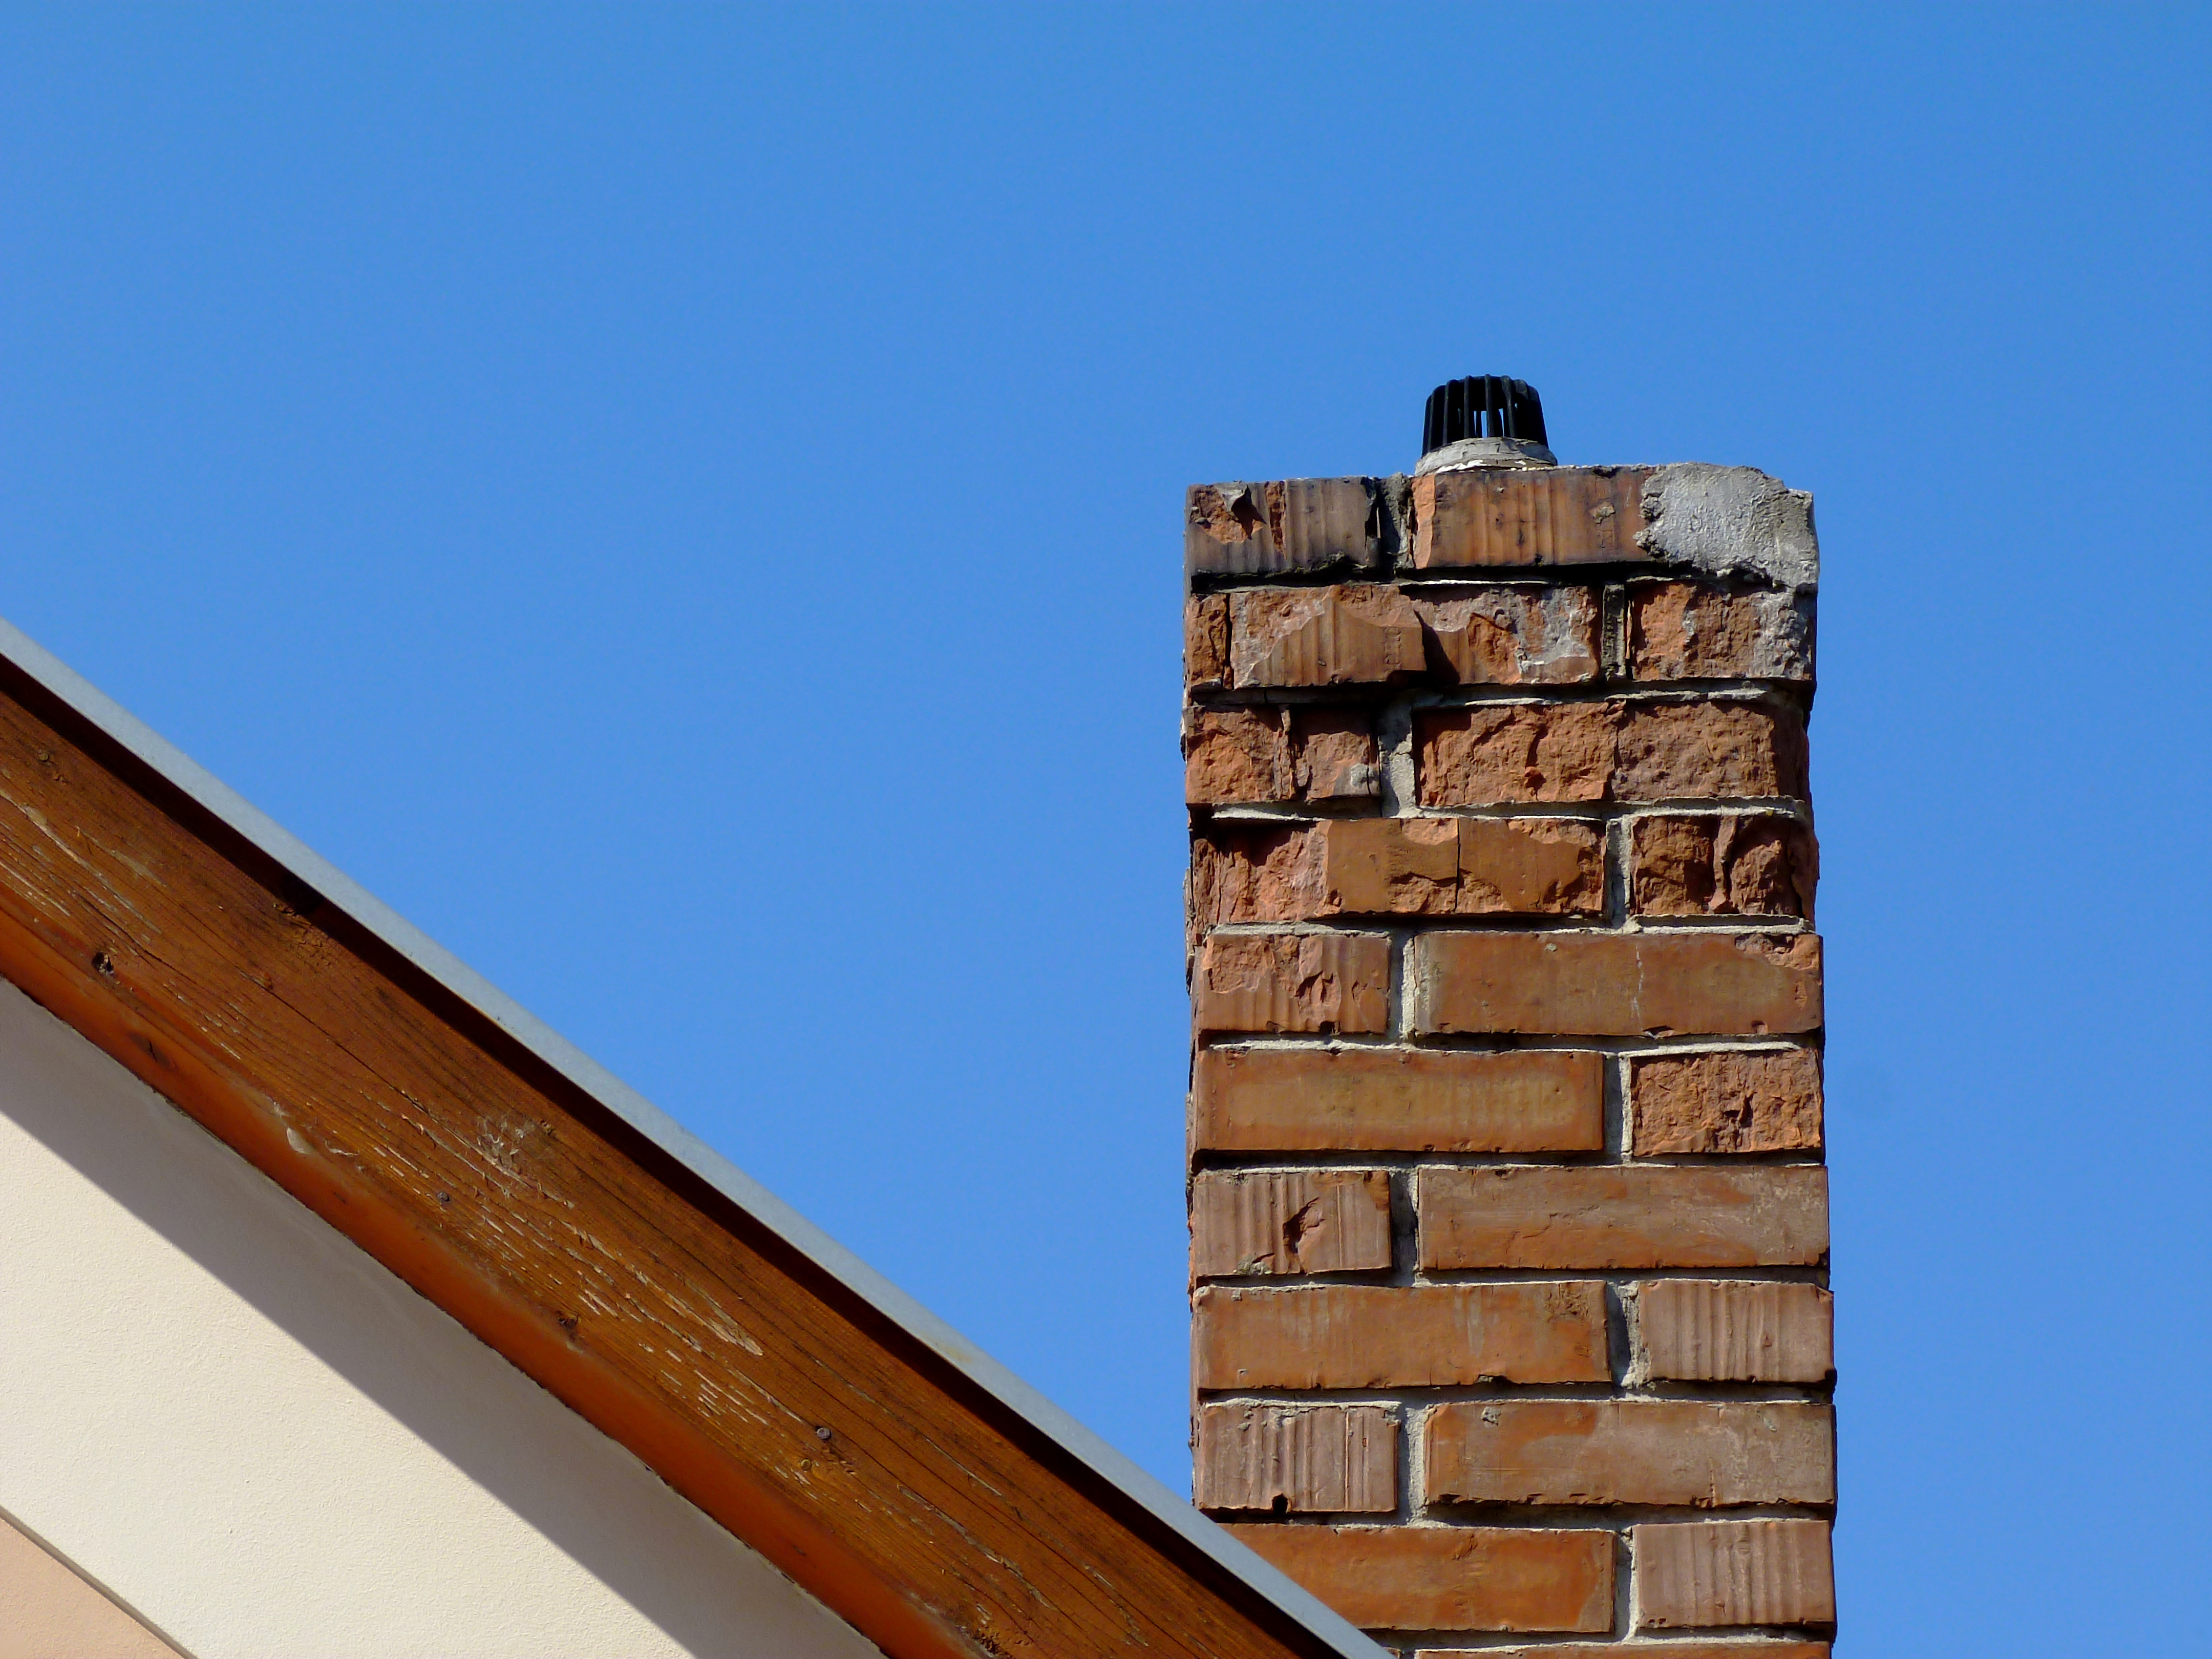 Brick chimney on house